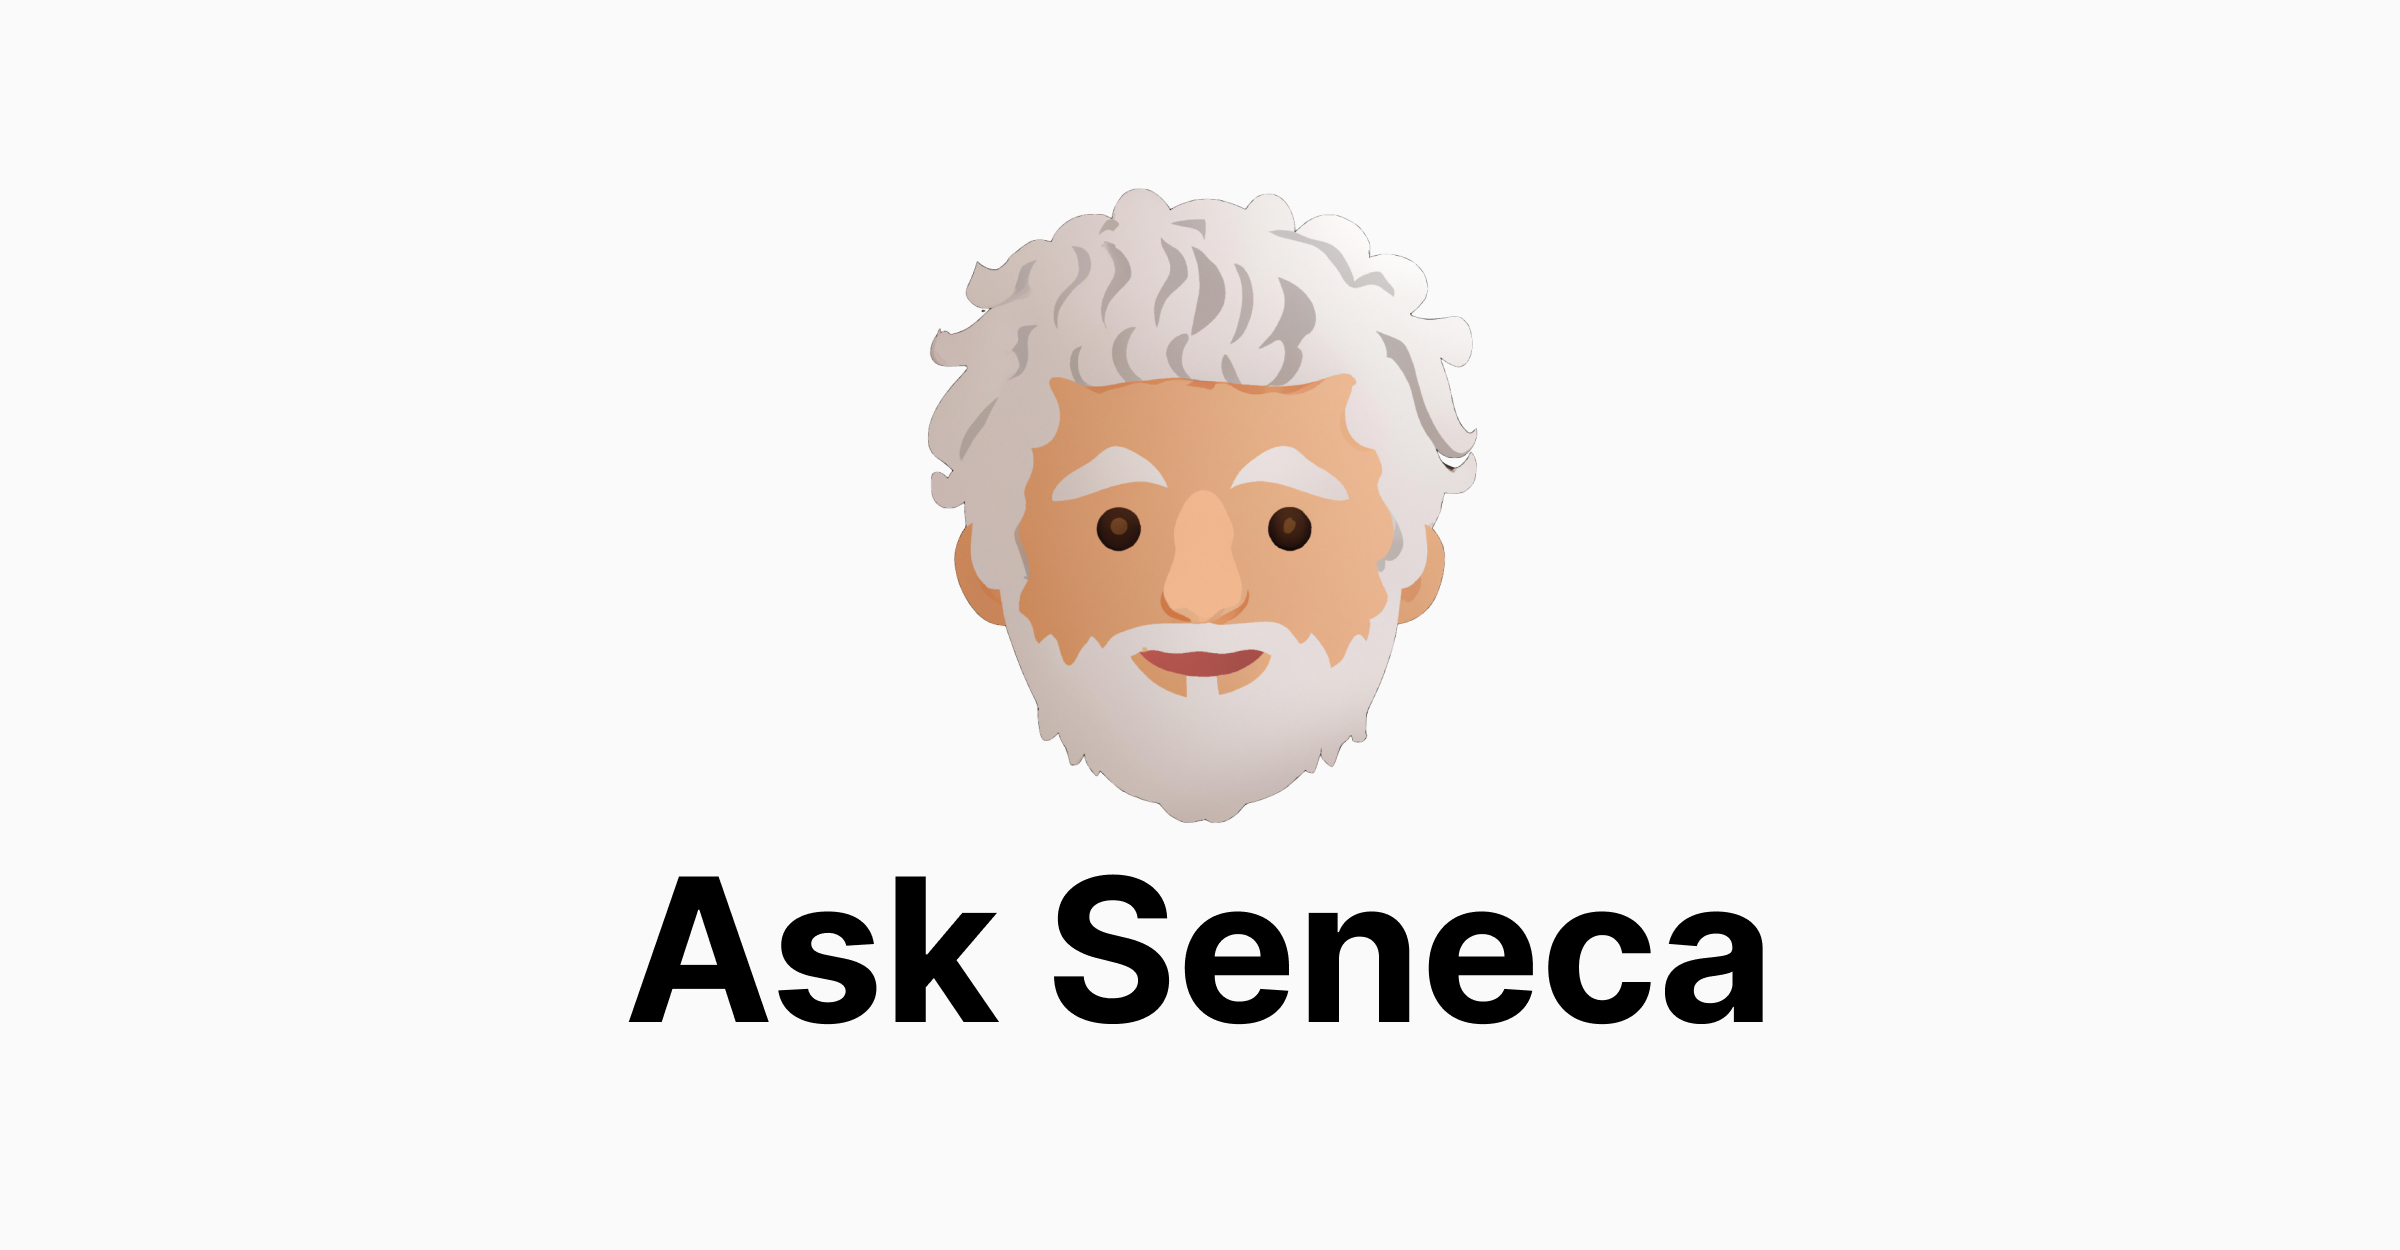 セネカに尋ねる - セネカに関する質問に答えるツール